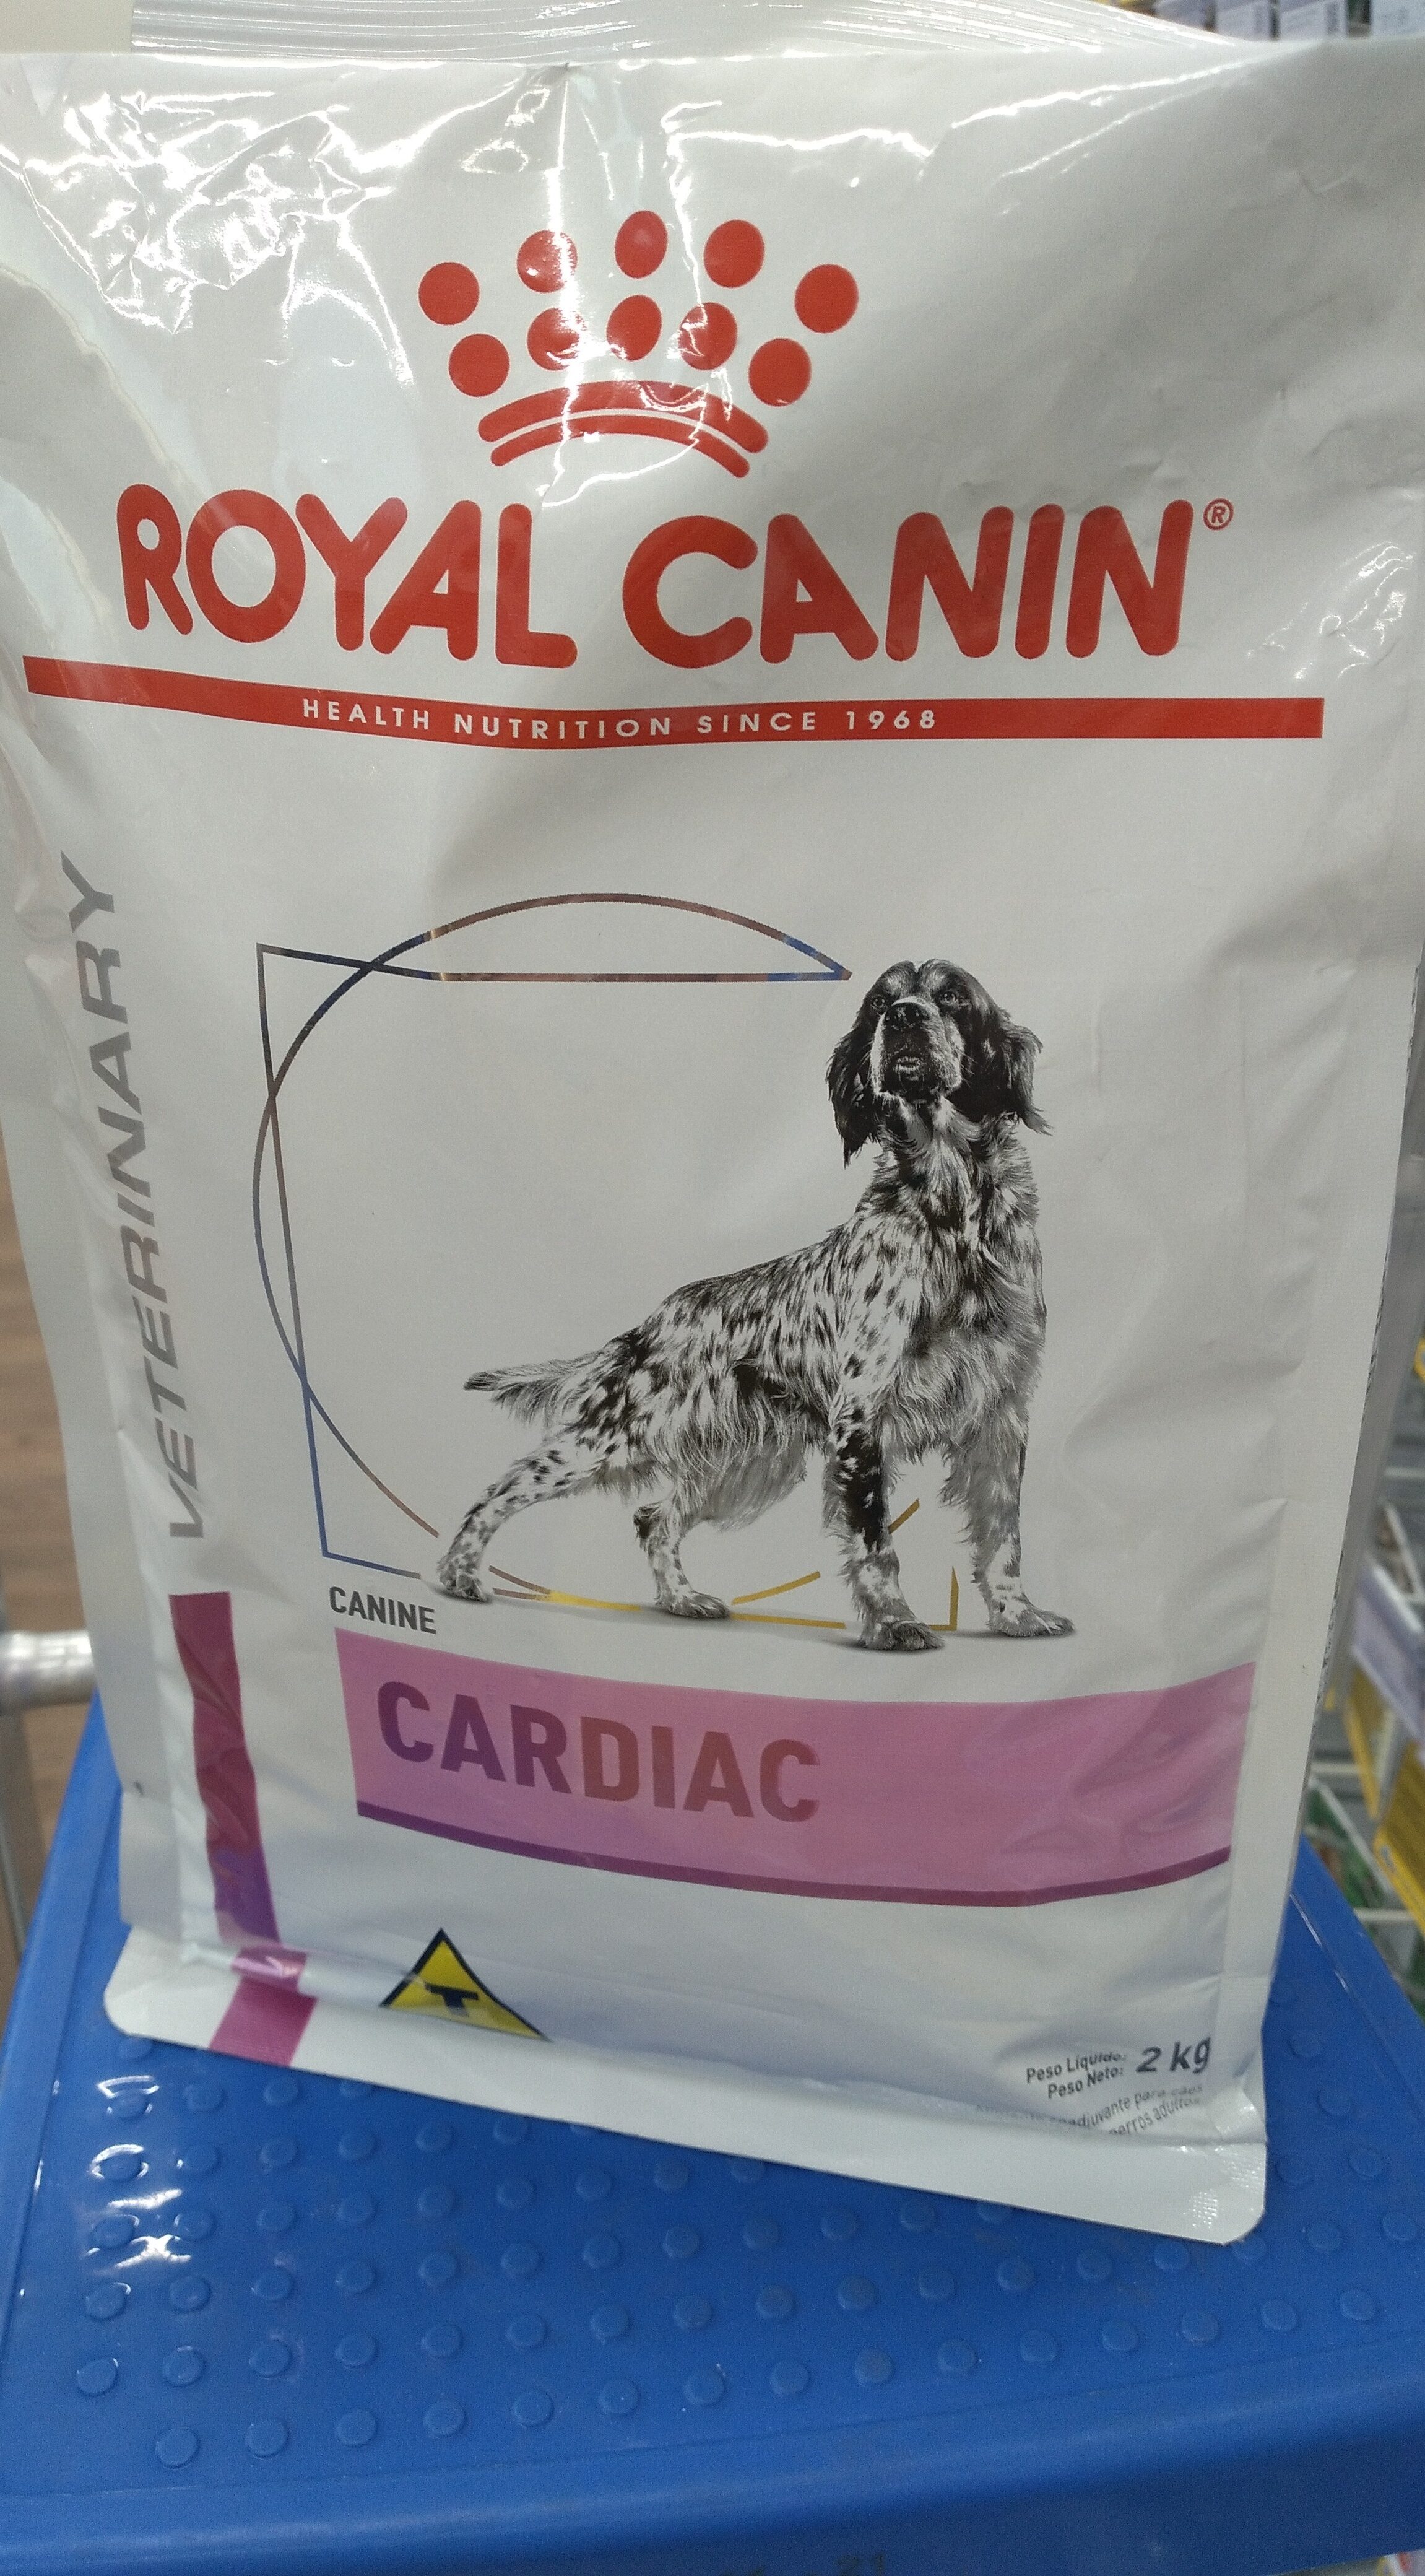 Royal canin Cardiac 2kg - Product - pt